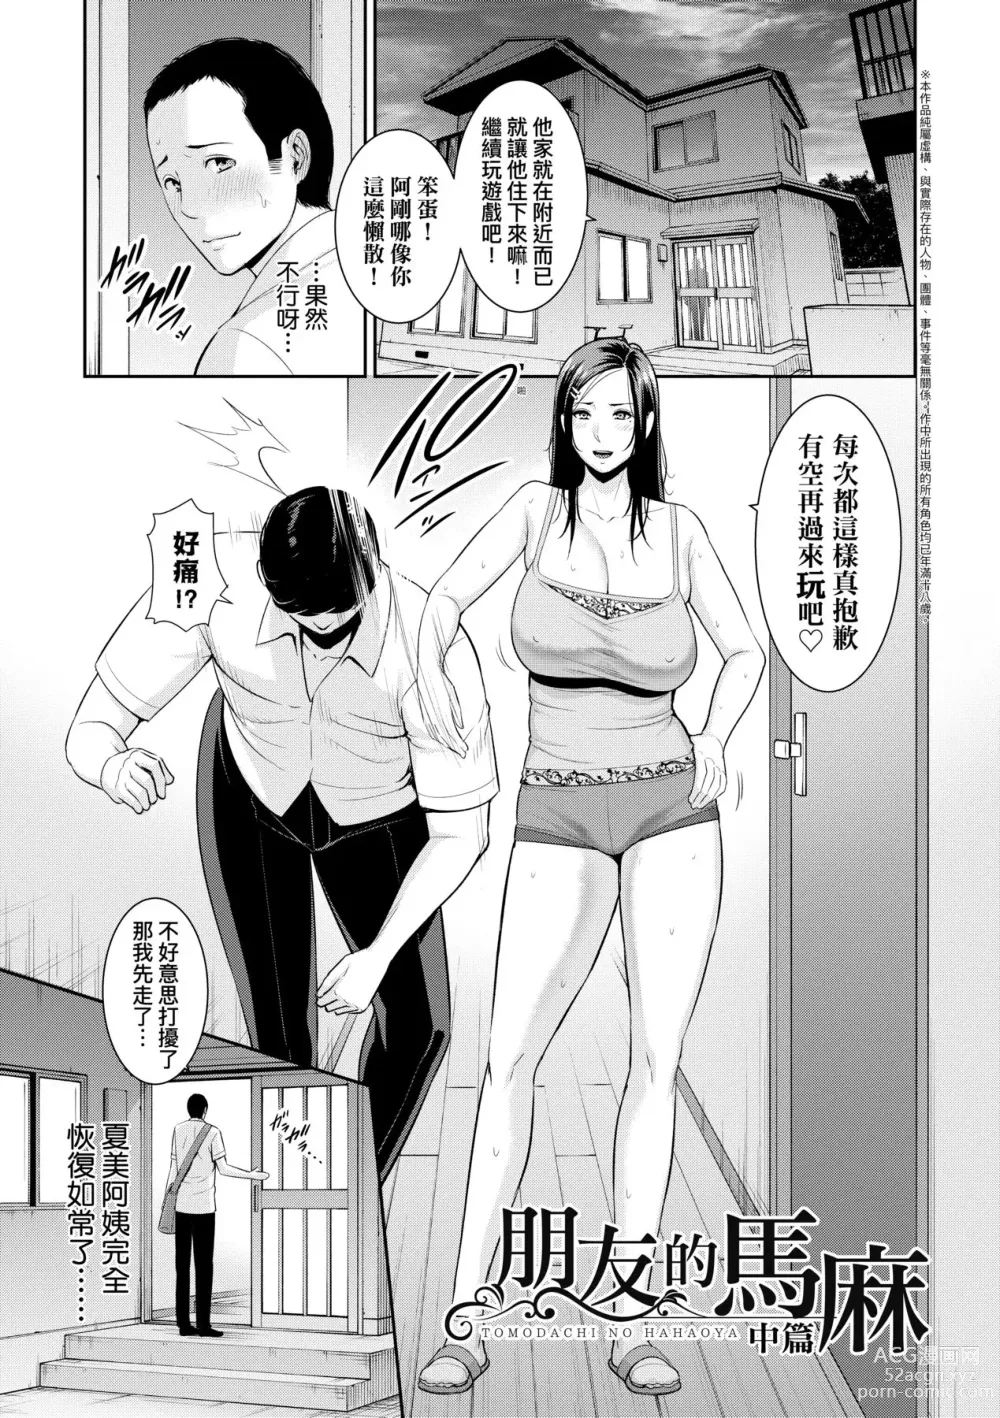 Page 30 of manga 朋友的馬麻 (decensored)